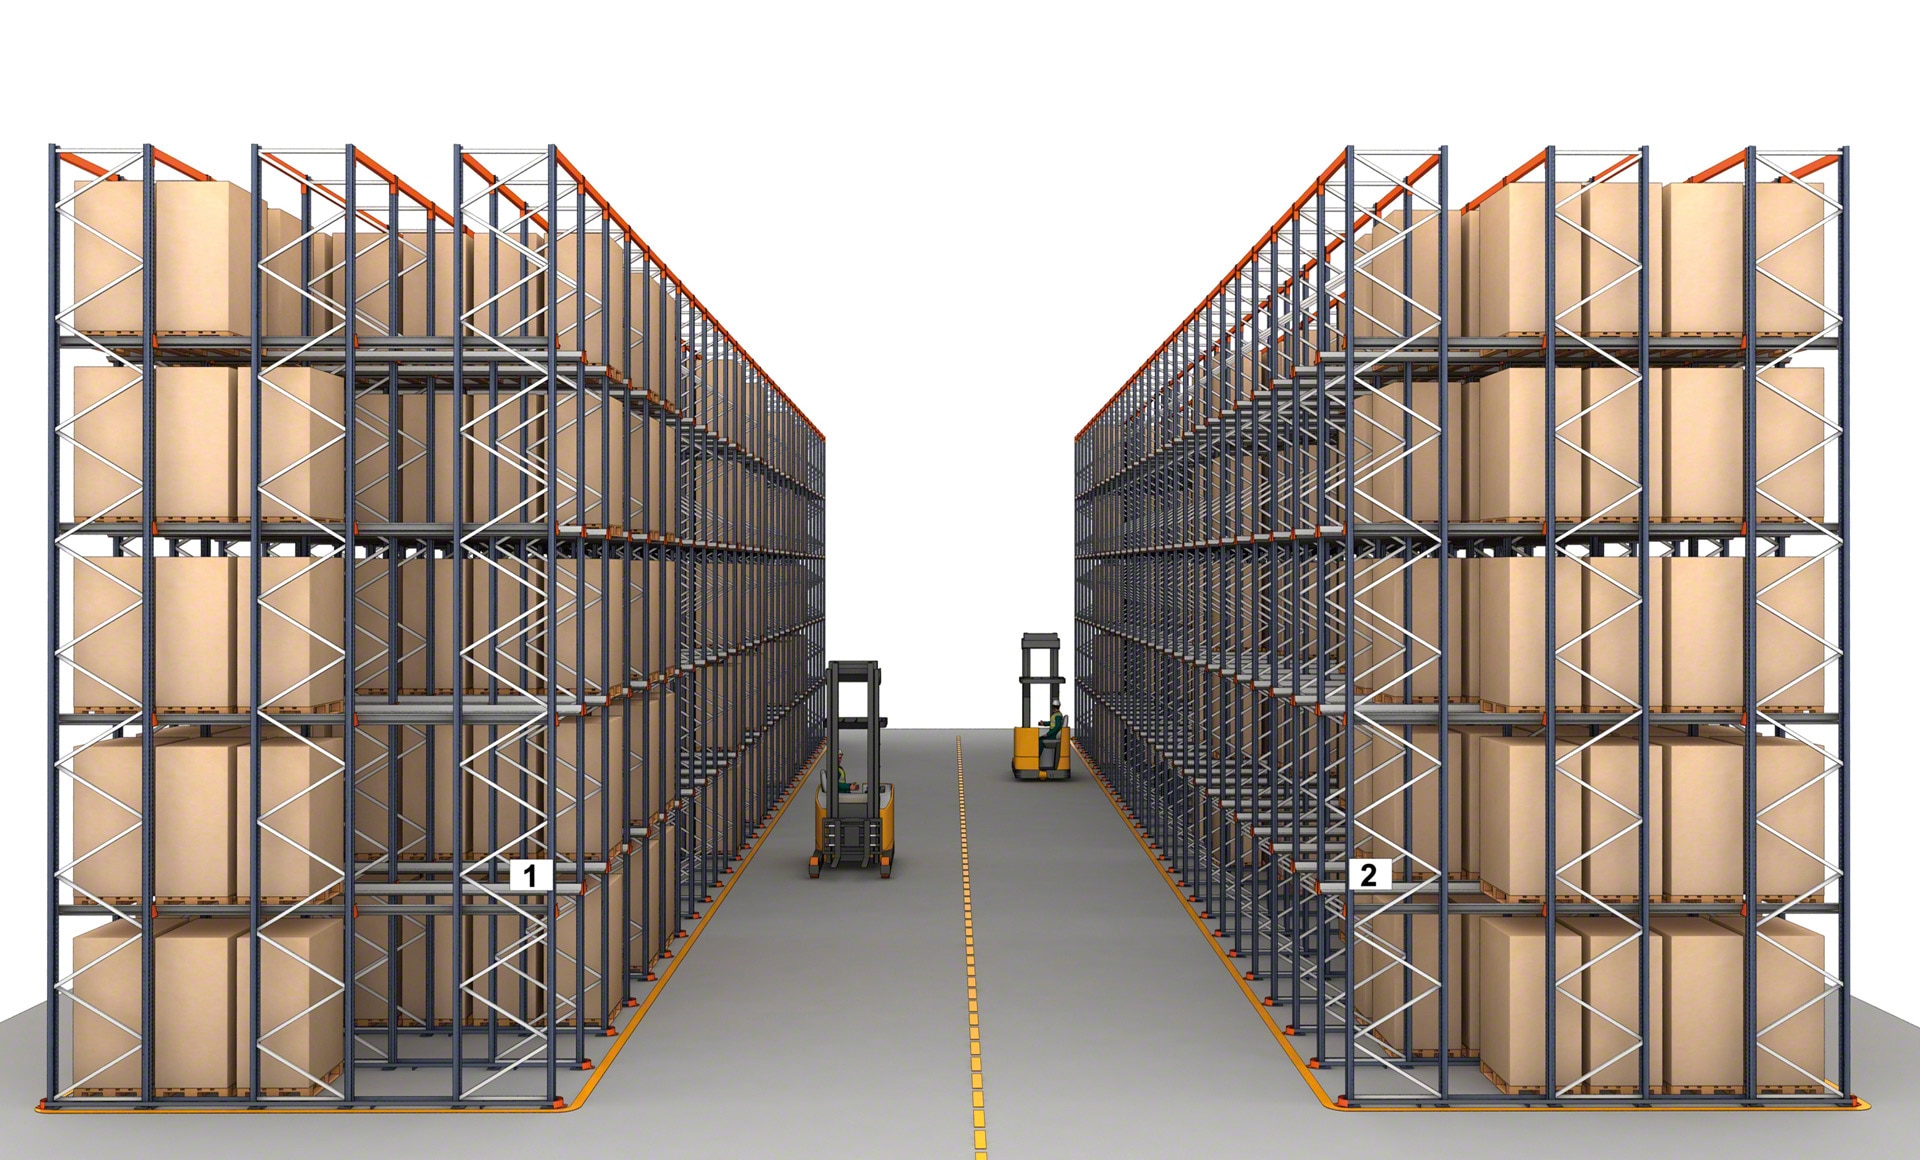 Os sistemas de armazenamento compacto aumentam de forma considerável a capacidade do armazém